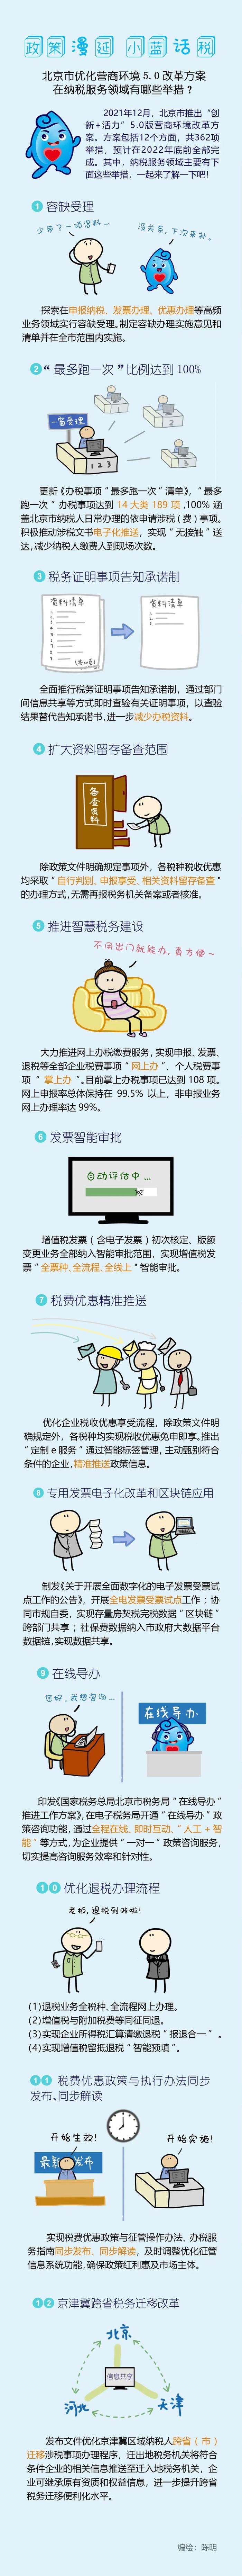 北京市优化营商环境5.0改革方案在纳税服务领域有哪些举措？